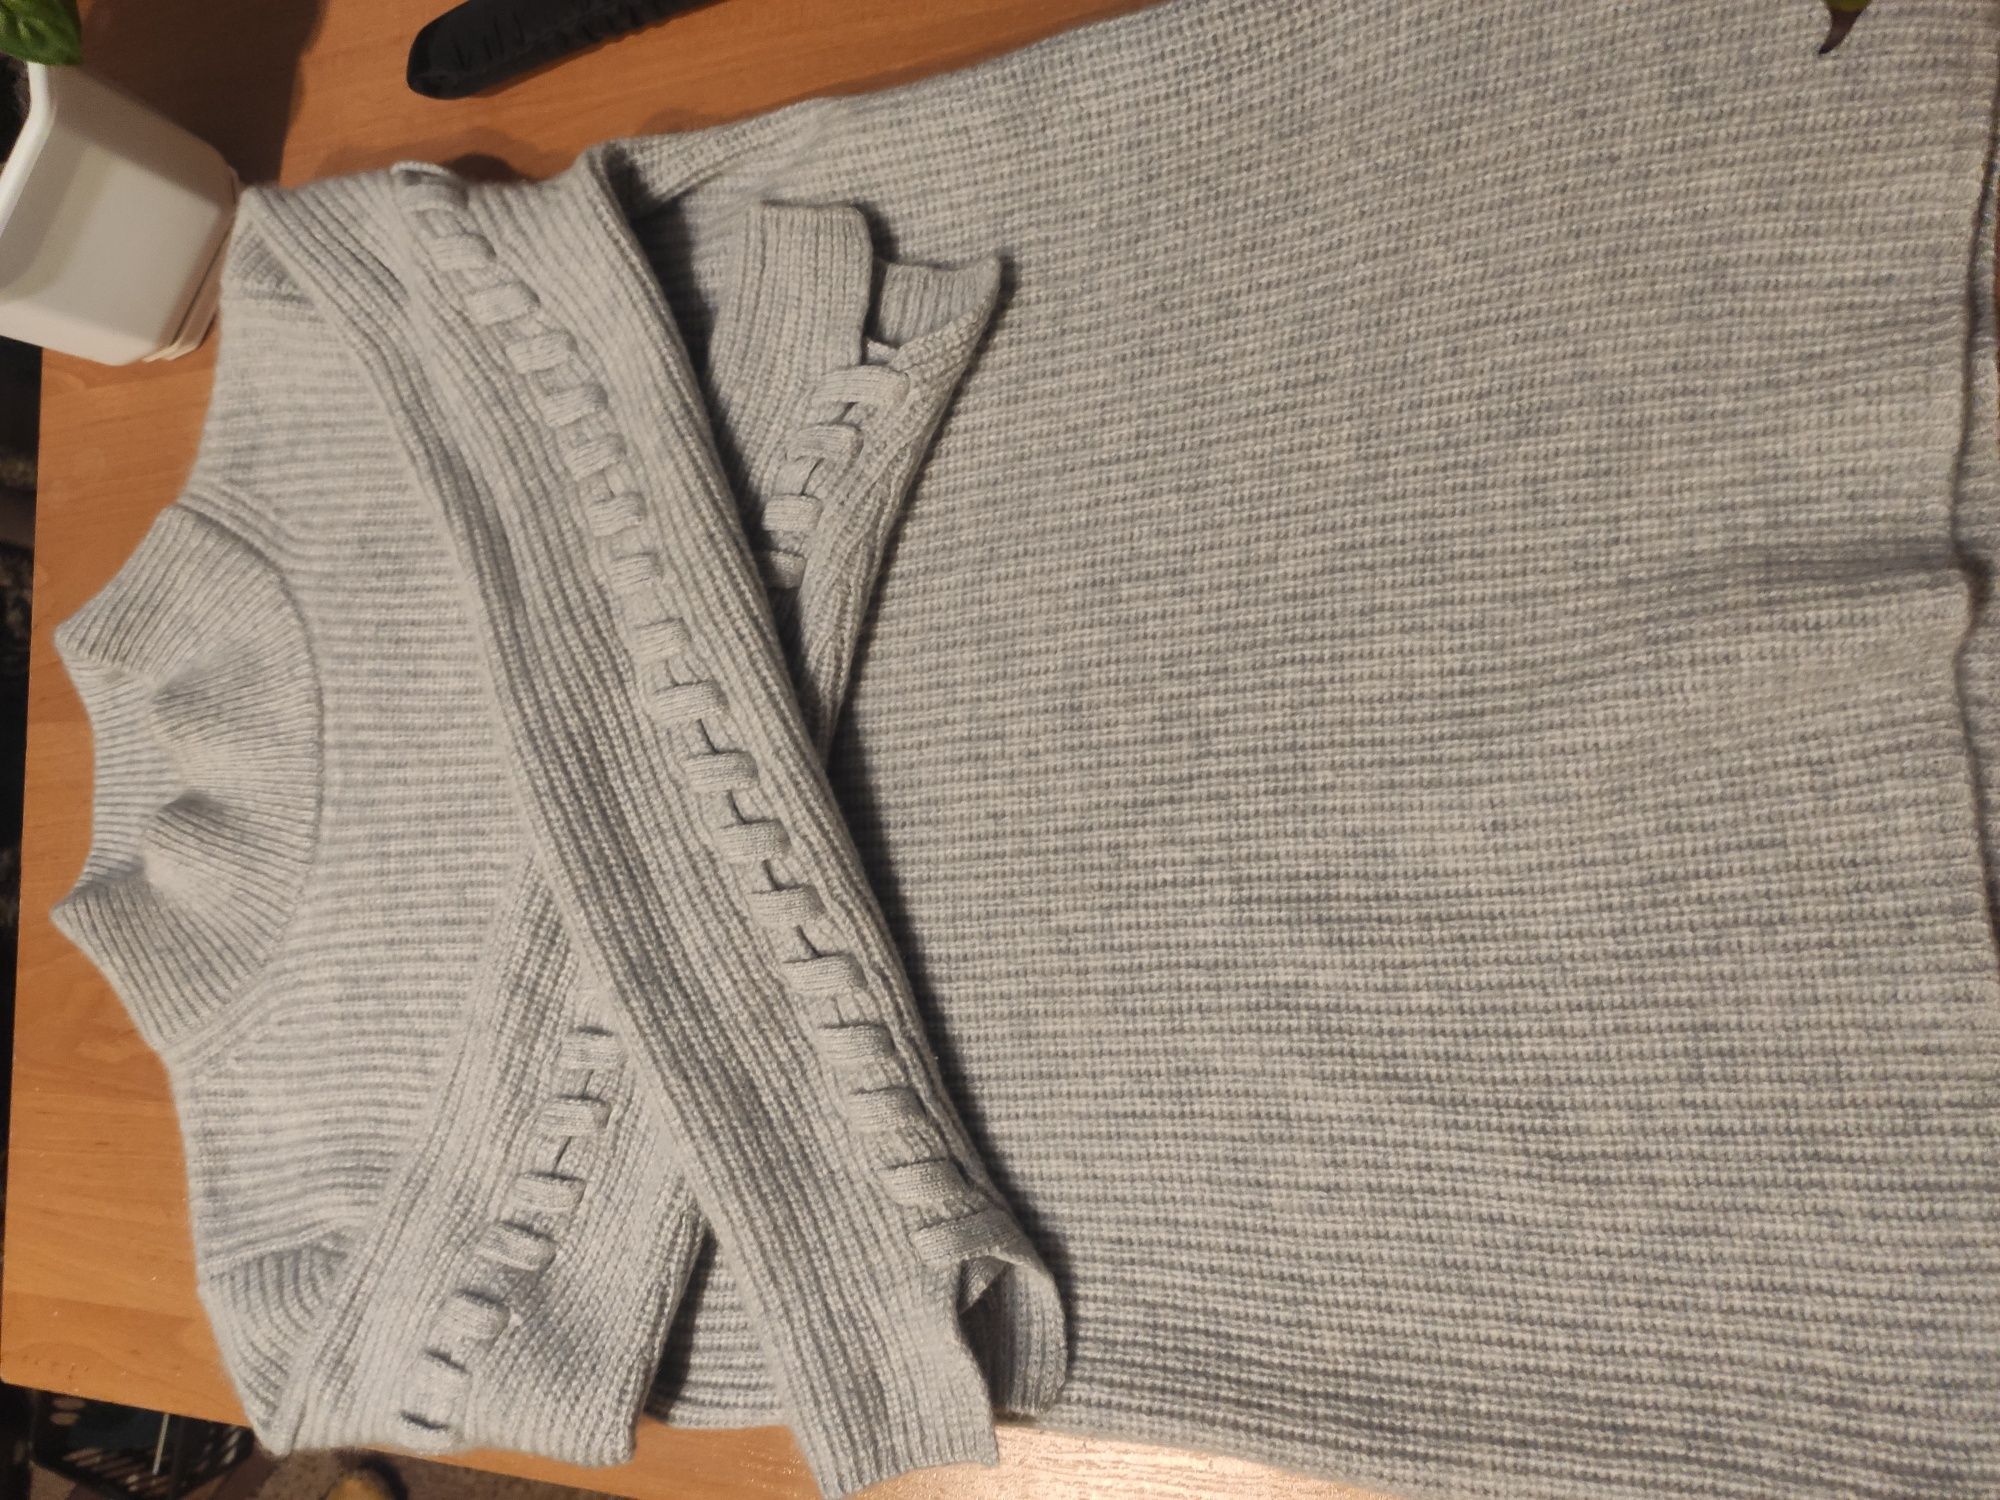 Кашемировый свитер